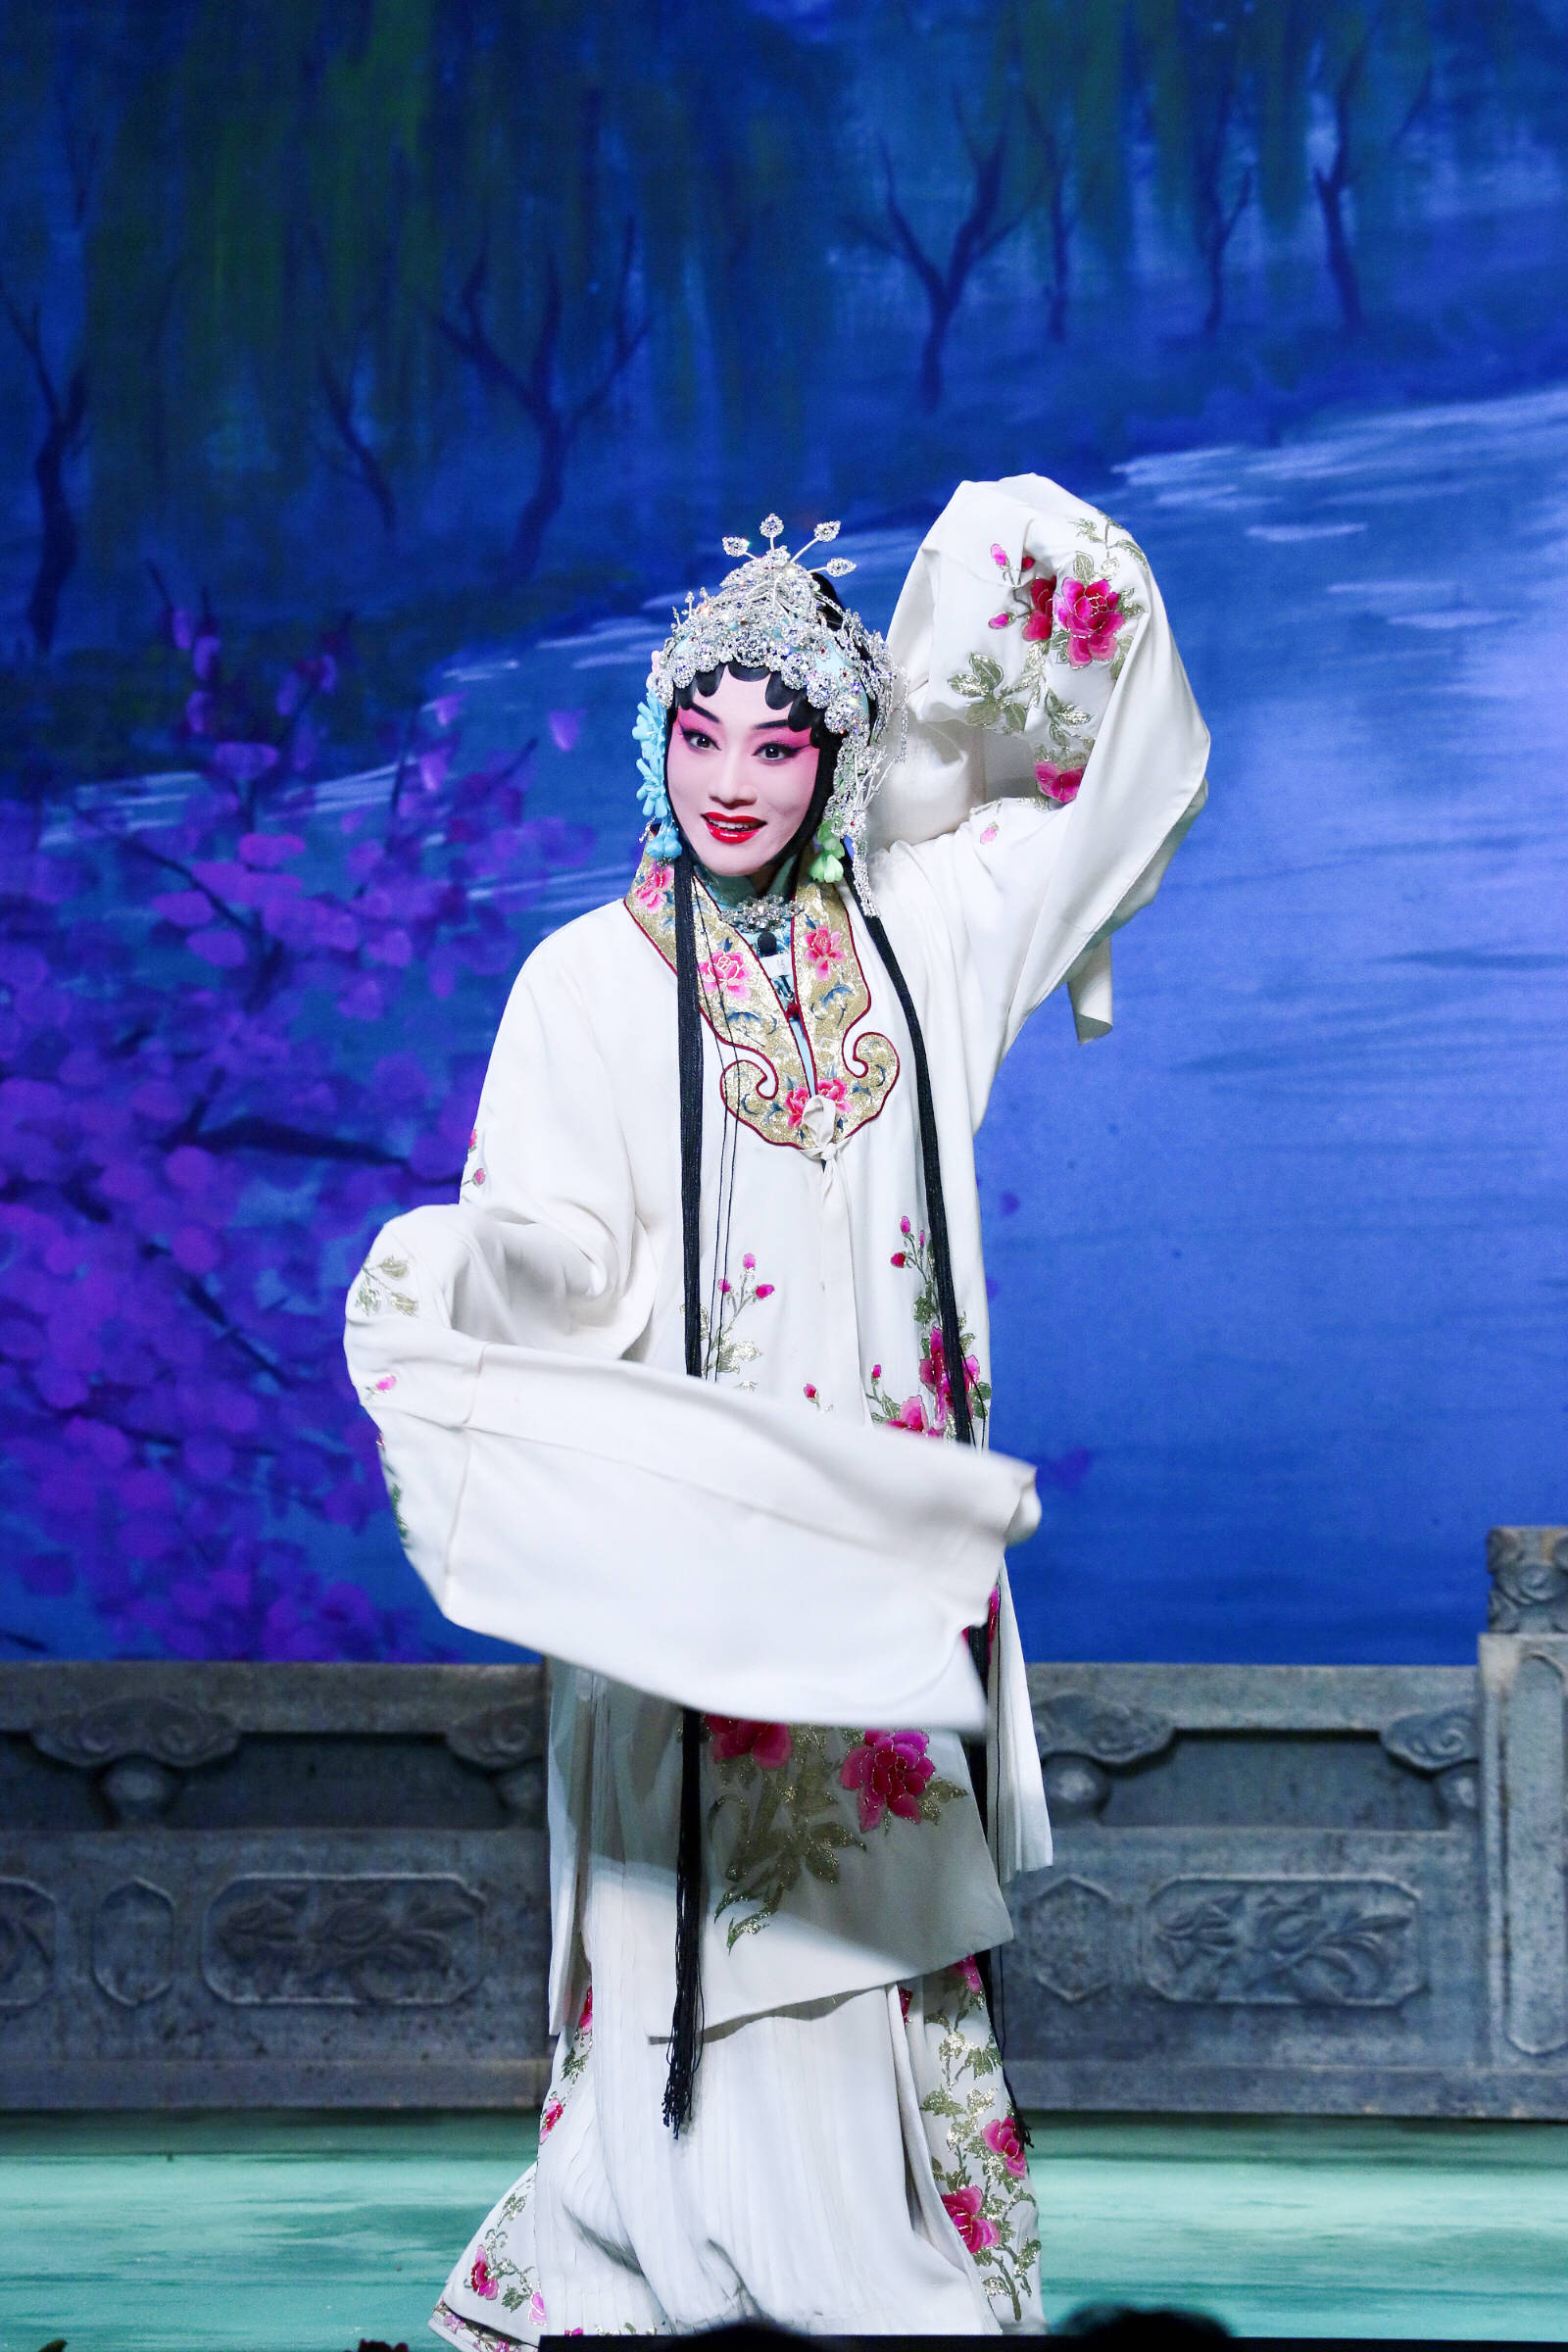 剧照欣赏:邮册设计稿欣赏:路洁,北京京剧院一团青衣演员